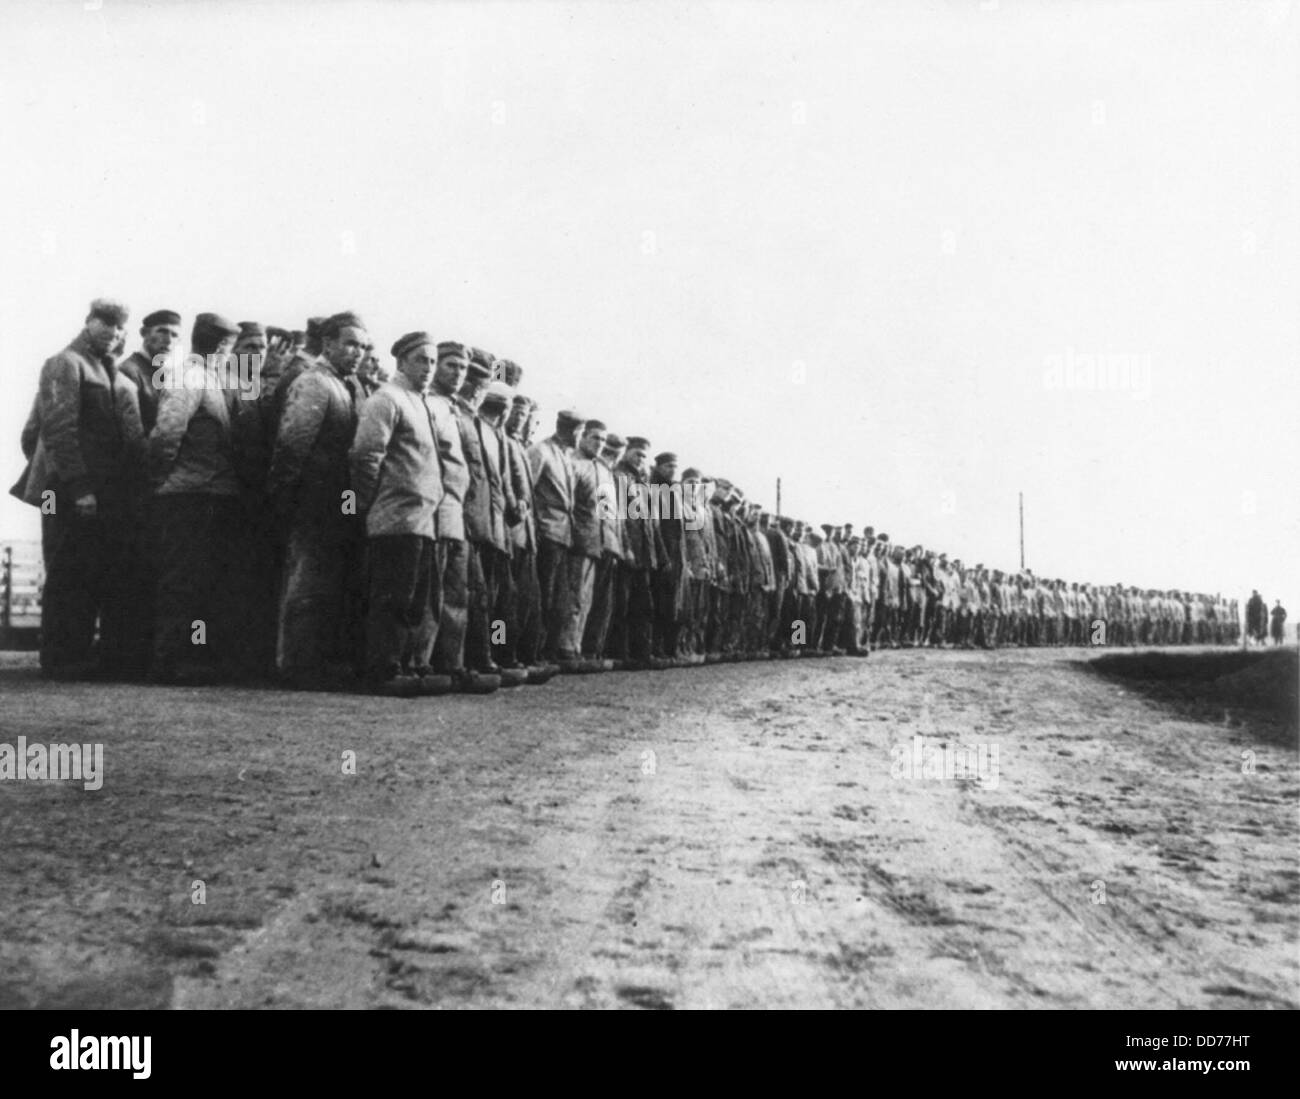 Les prisonniers politiques allemands à un camp de travail en 1935. Des centaines de prisonniers se tenir en longues rangées, à un camp de concentration dans le Banque D'Images